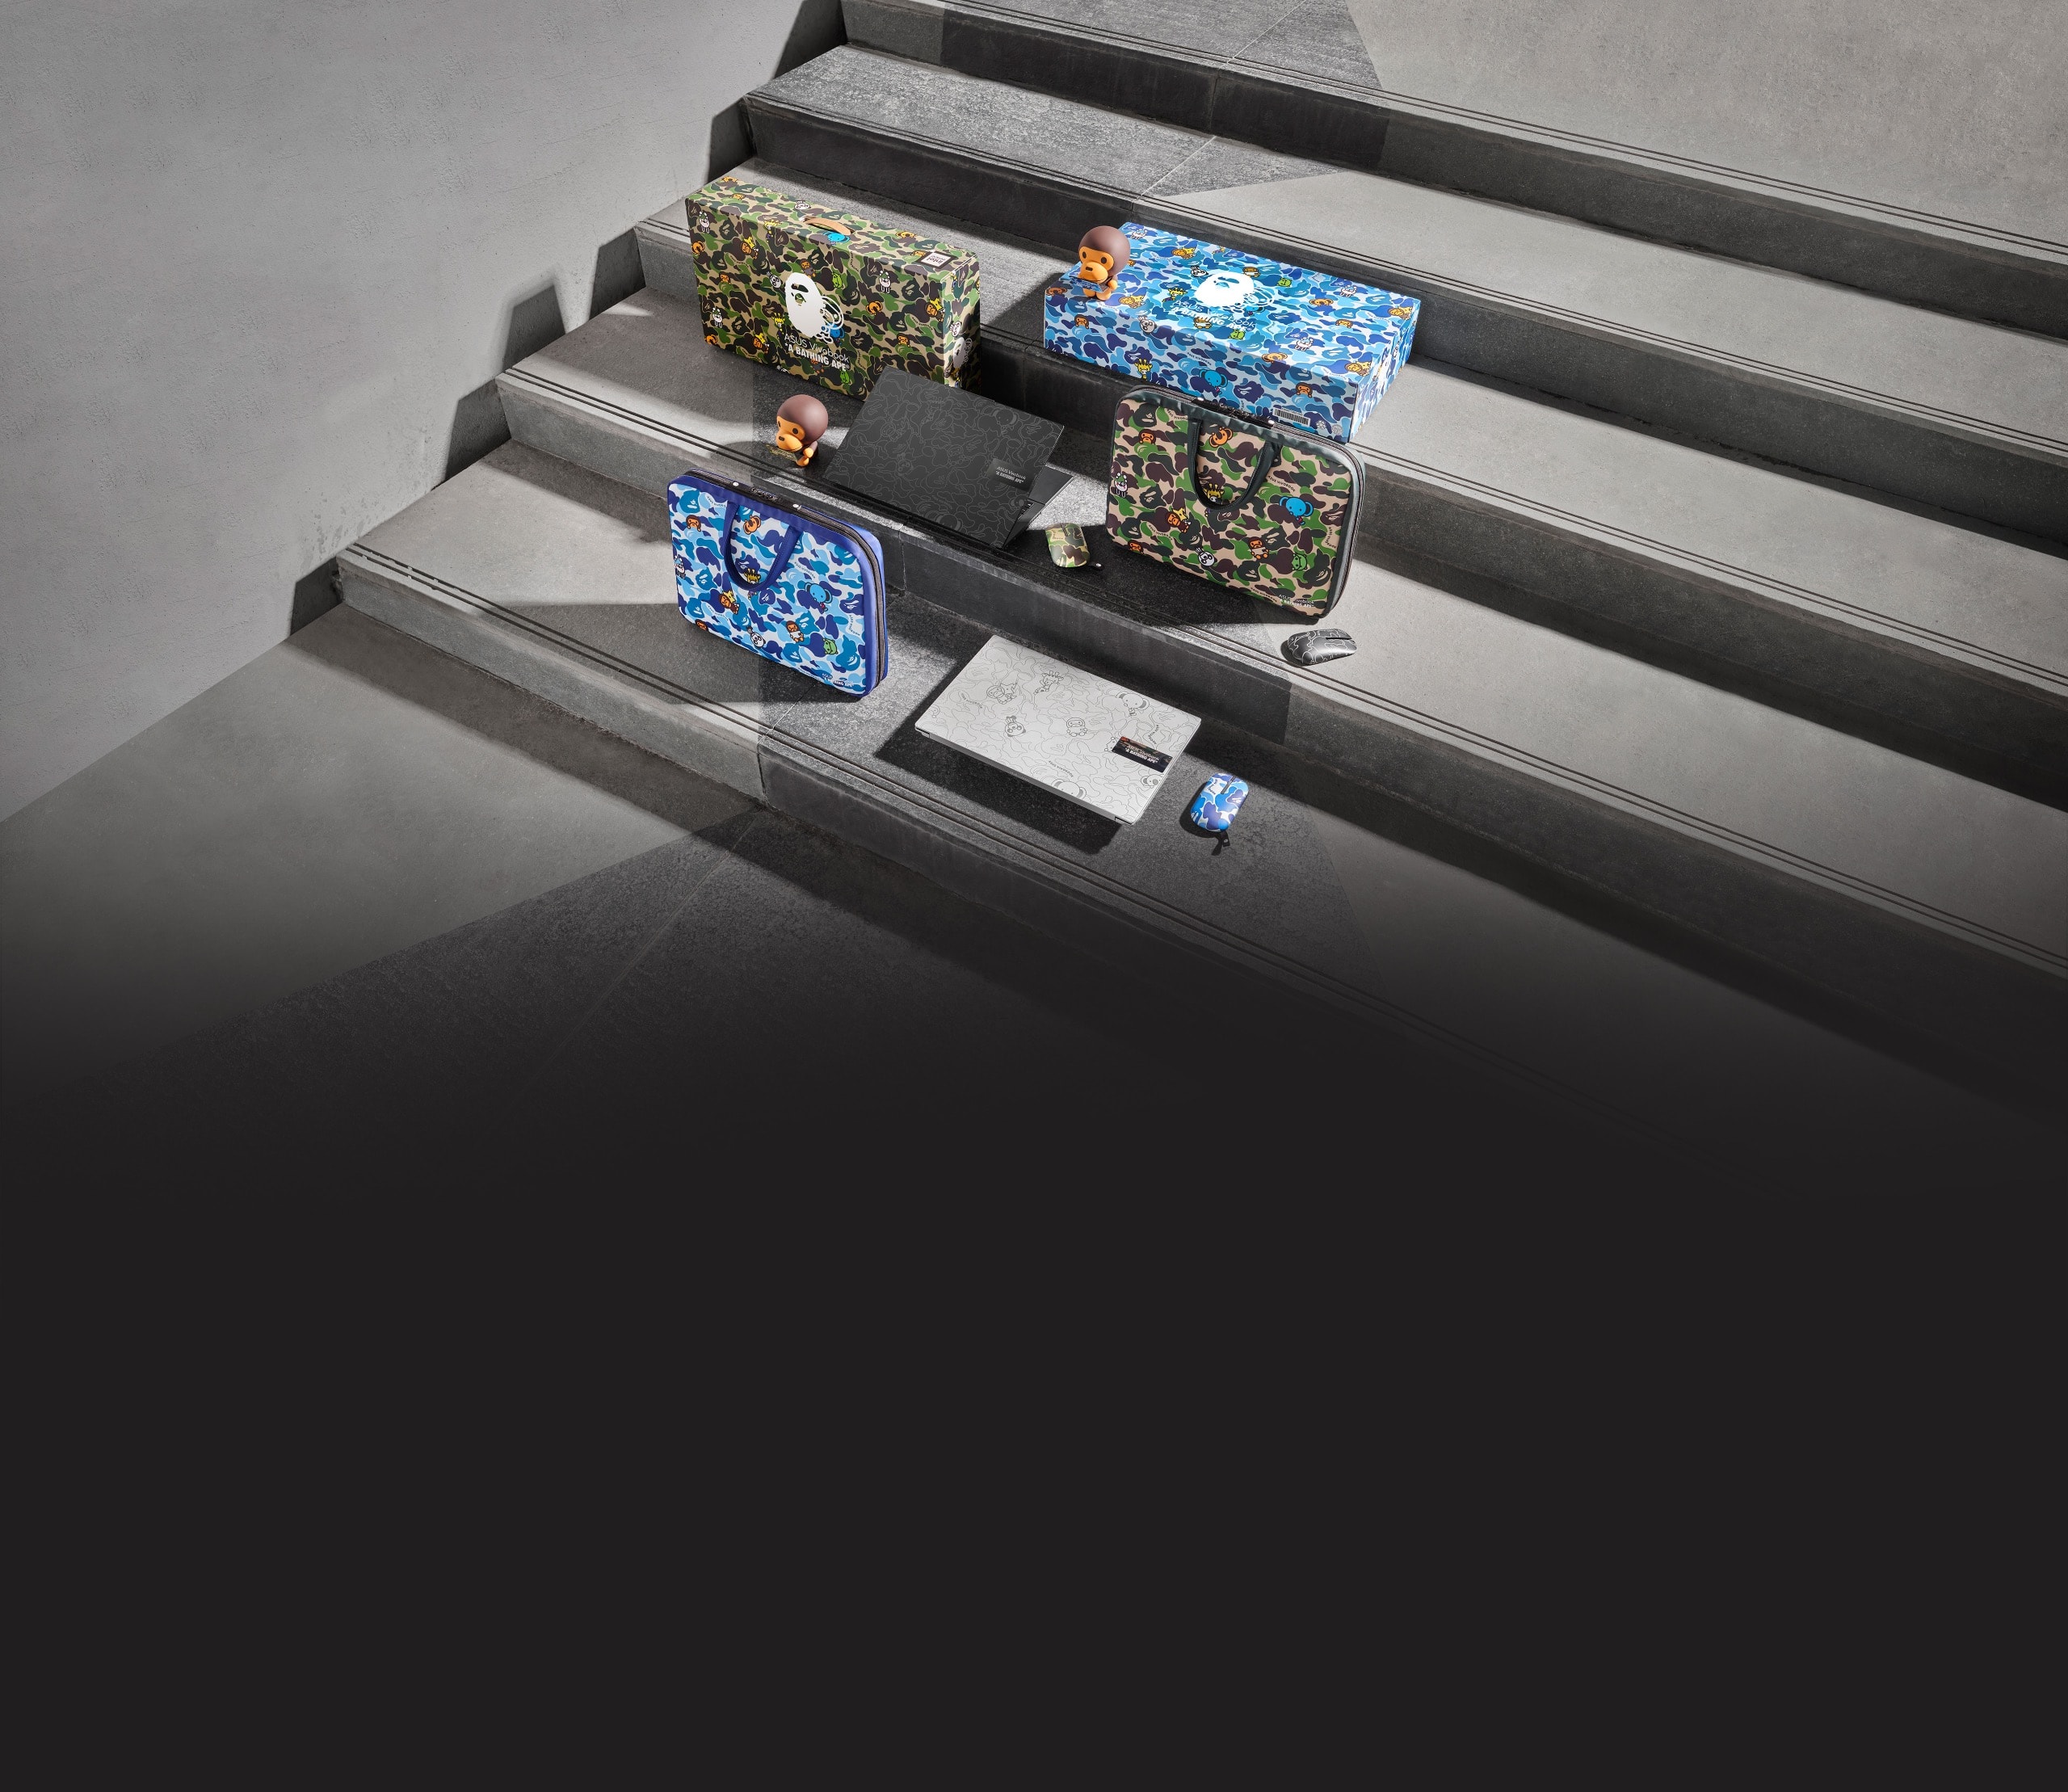 Blauwe en groene Vivobook BAPE Edition bundels staan uitgestald op grijze trappen, inclusief geschenkdozen, laptops, muizen en draagtassen.